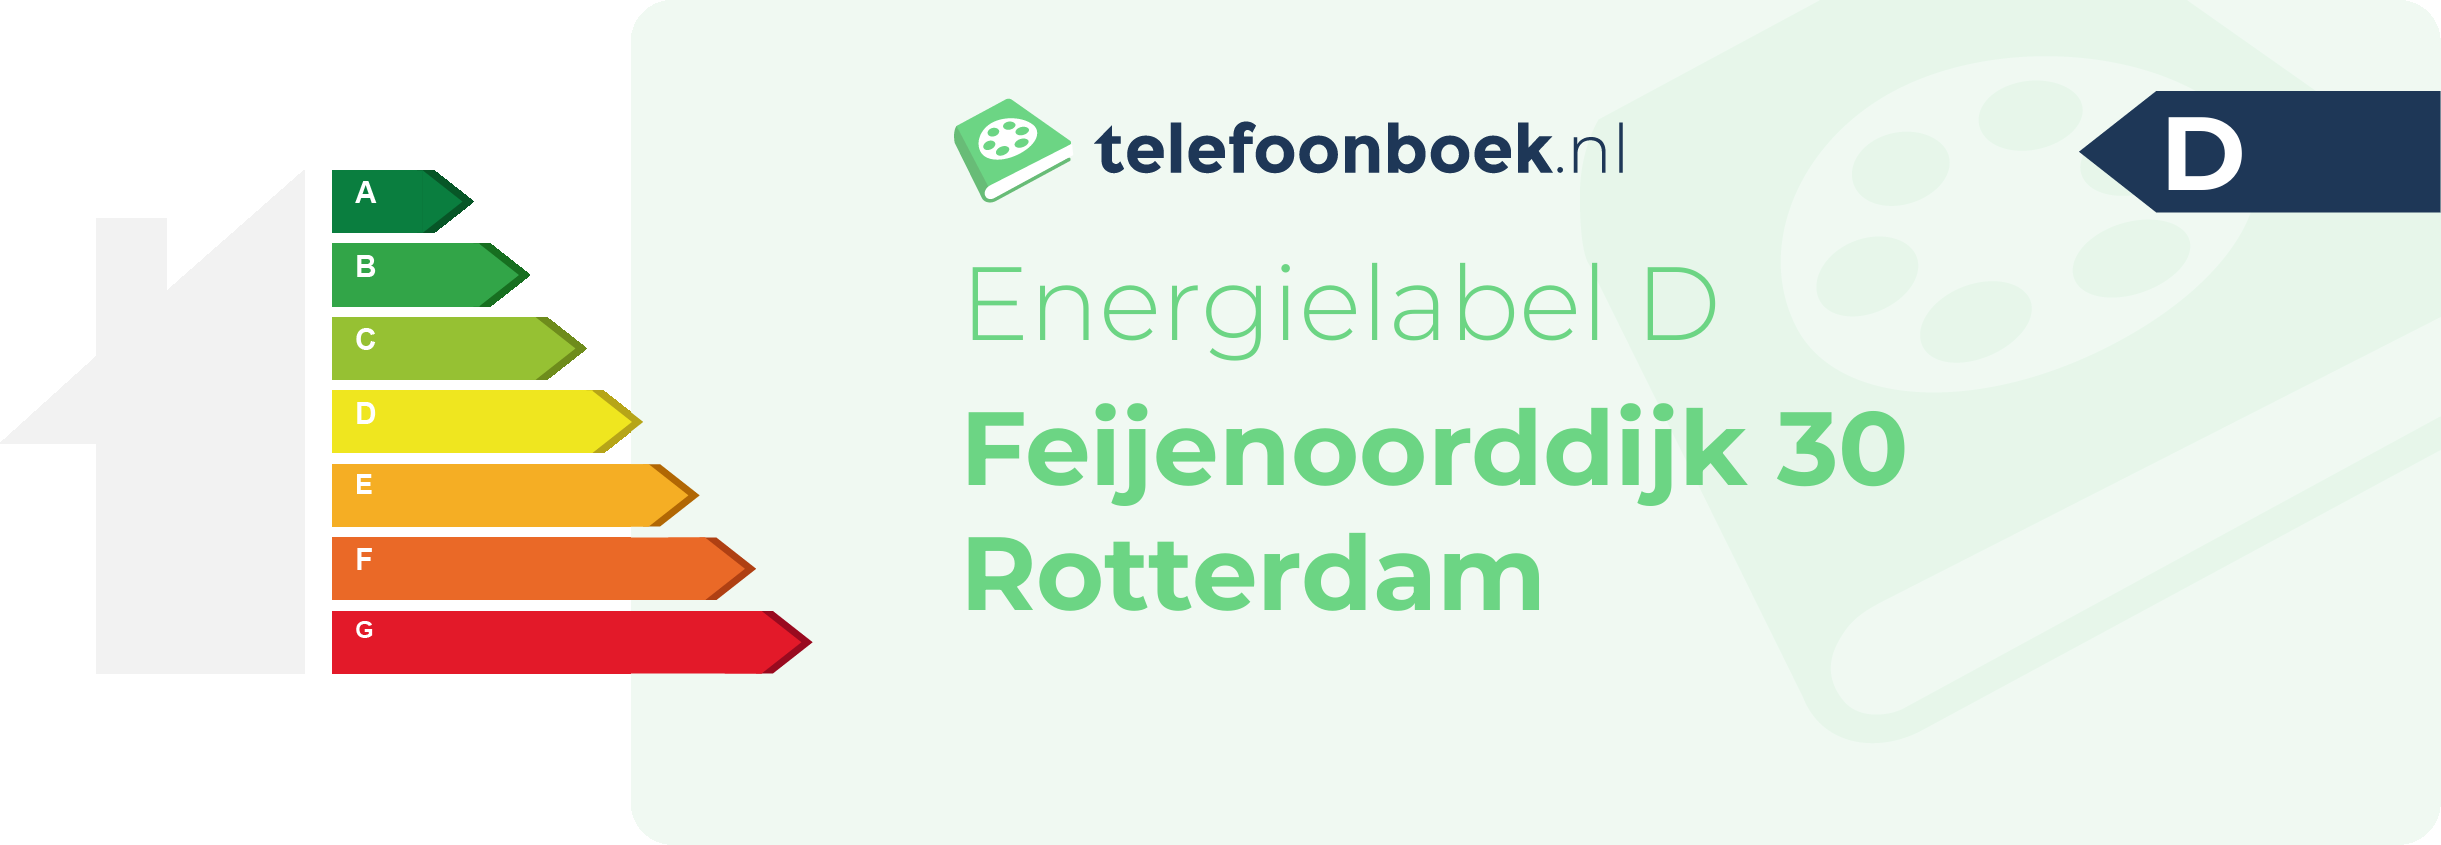 Energielabel Feijenoorddijk 30 Rotterdam